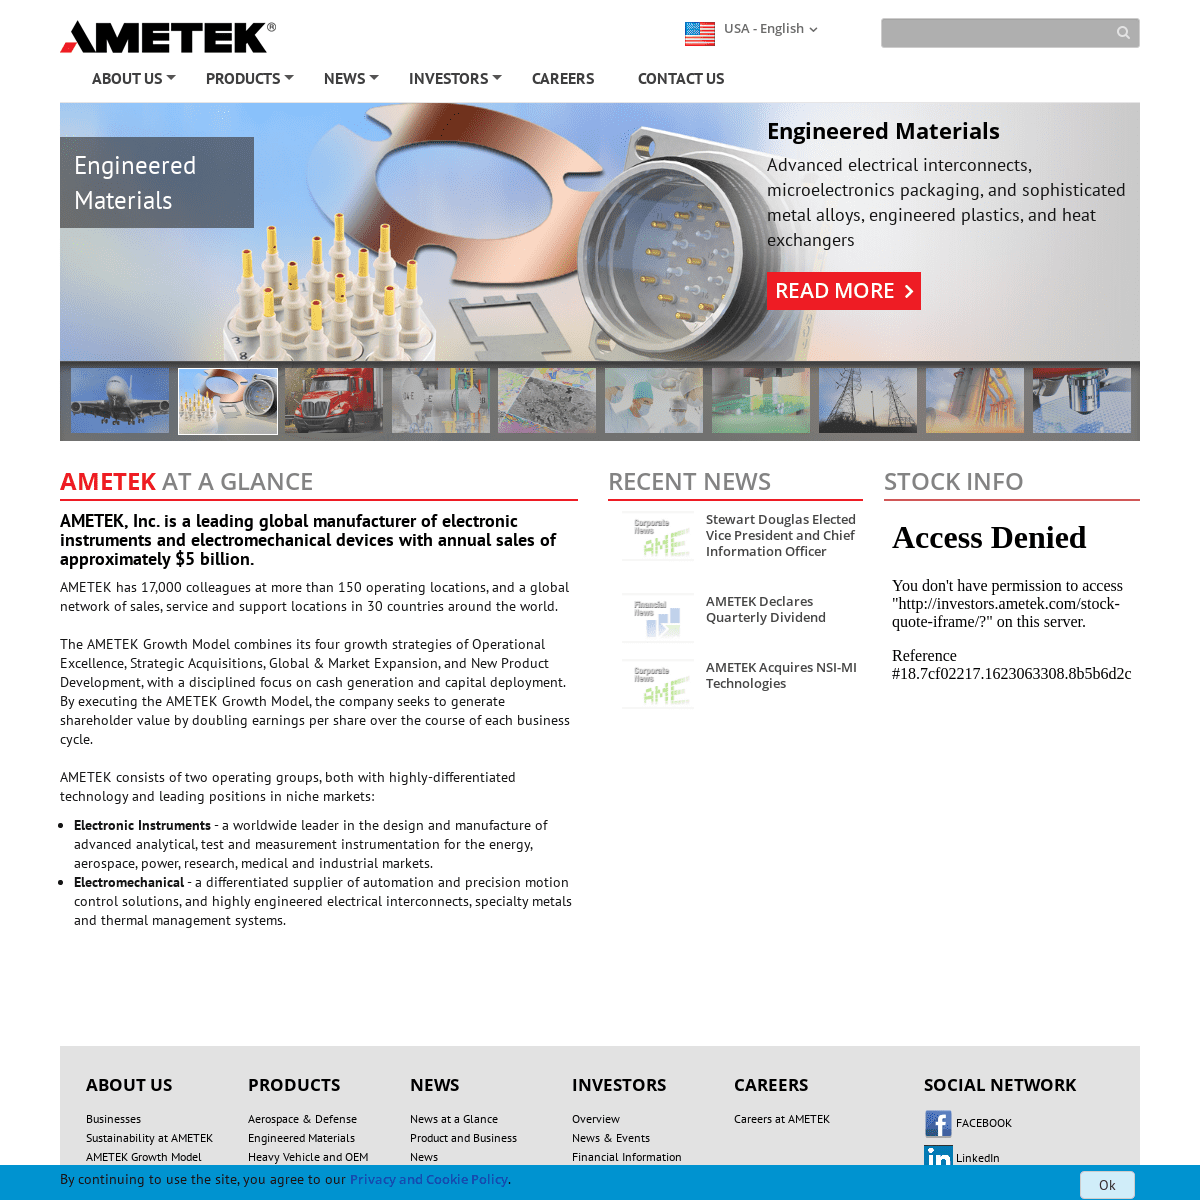 A complete backup of https://ametek.com